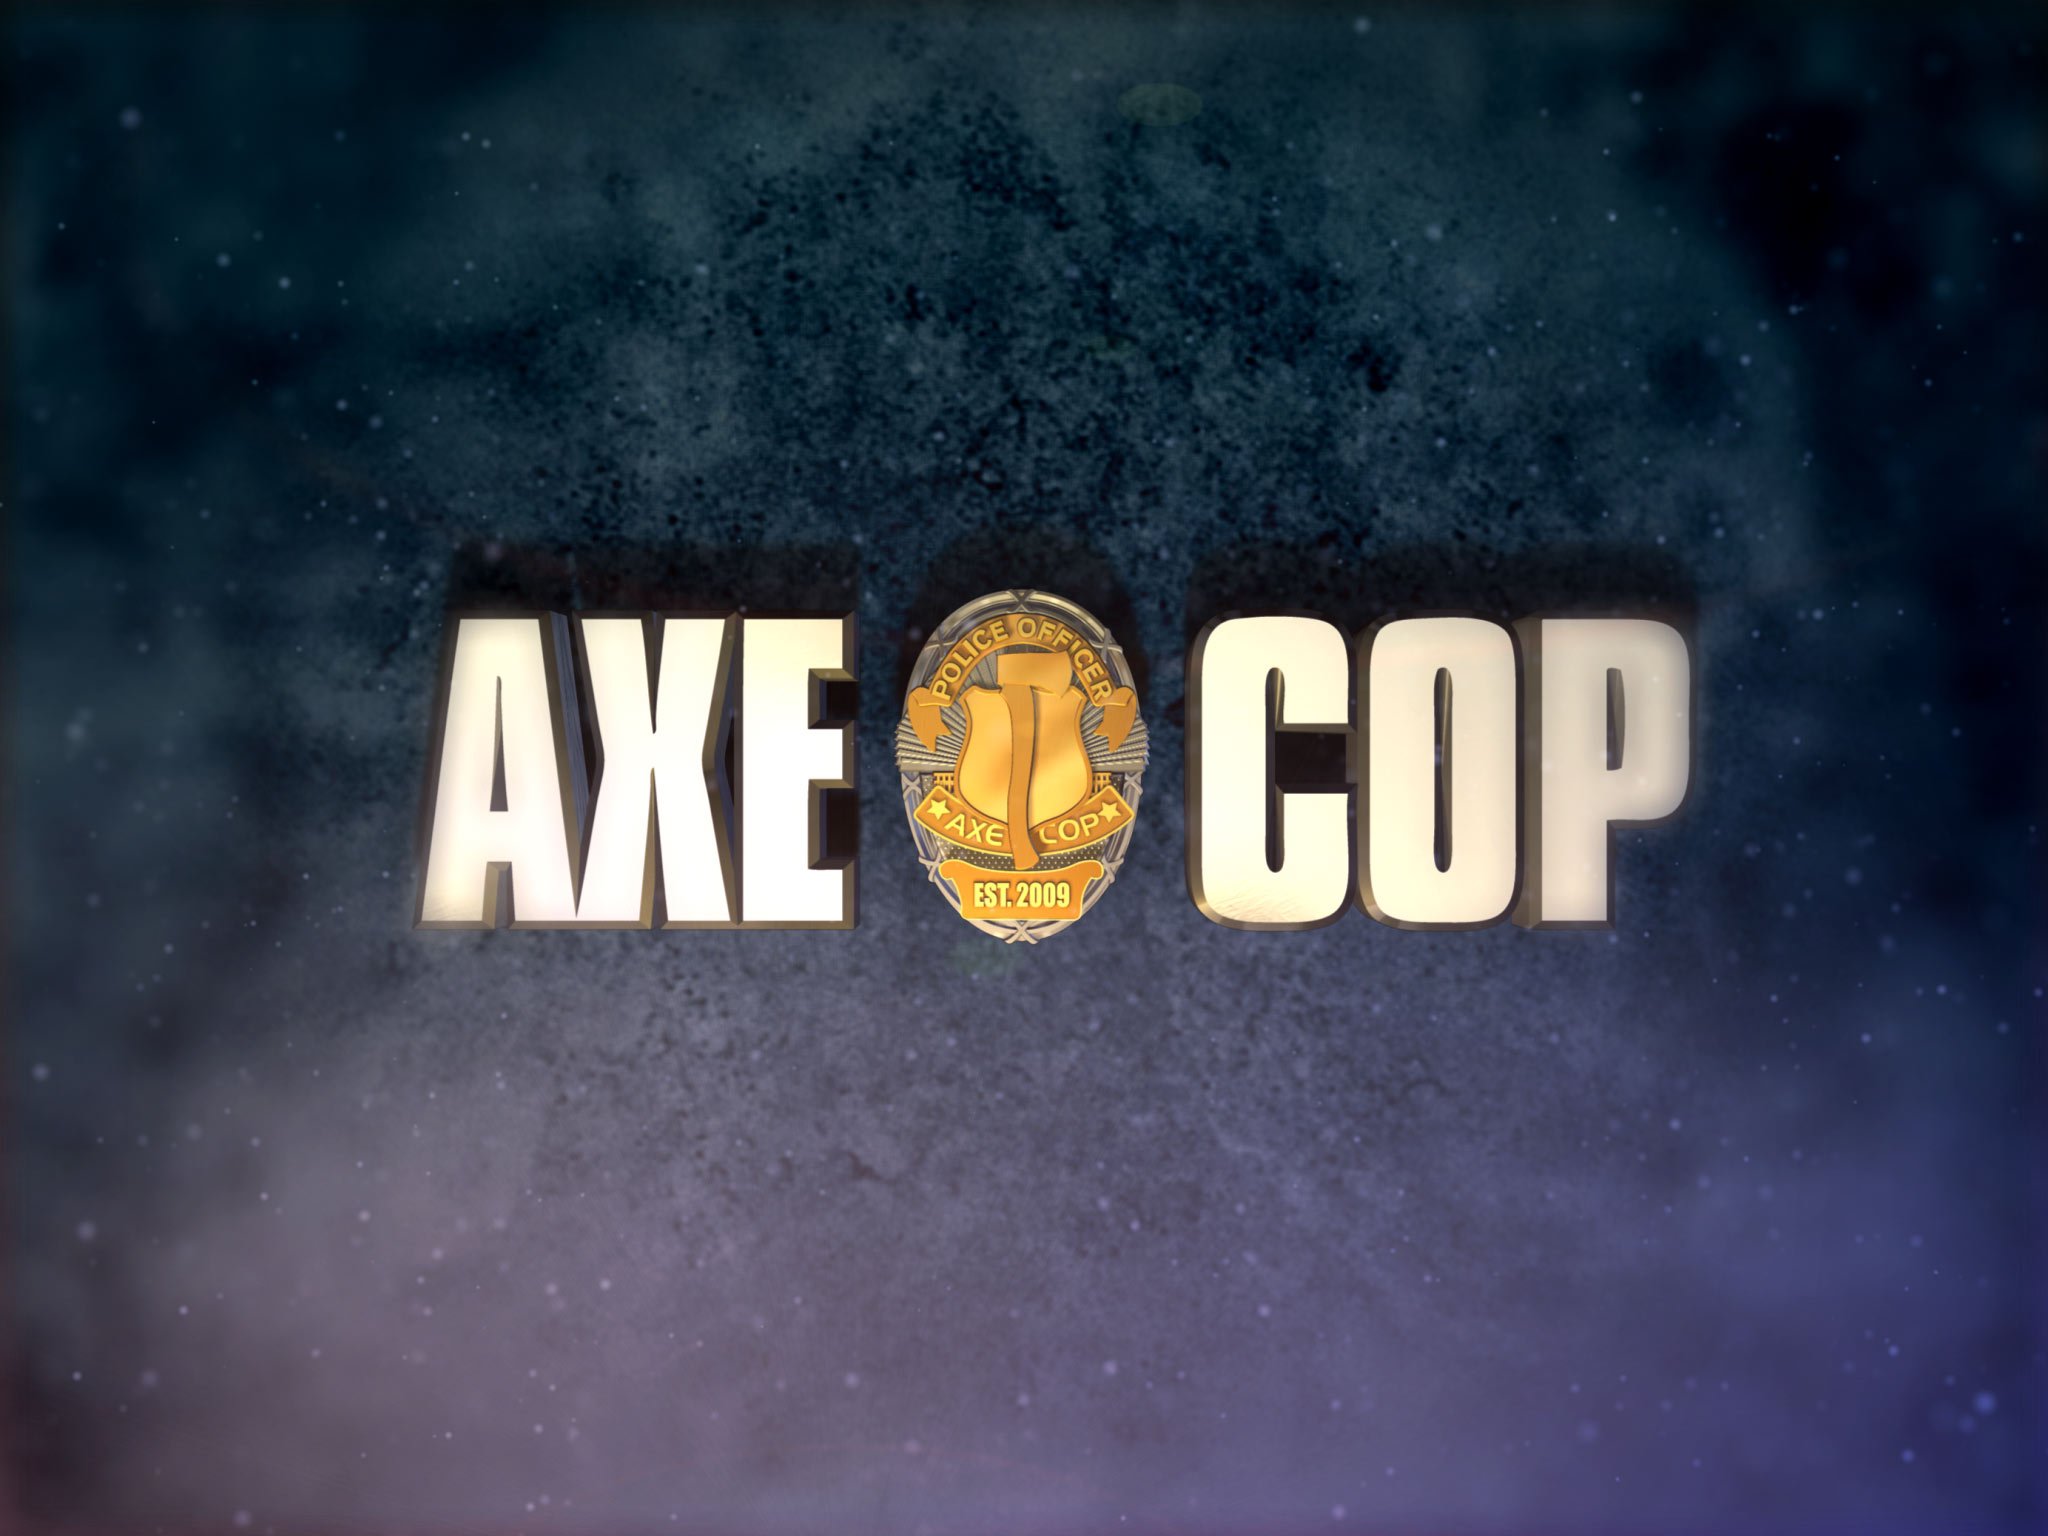 axe cop, Animation, Action, Comedy, Axe, Cop, Comics, Cartoon,  27 Wallpaper